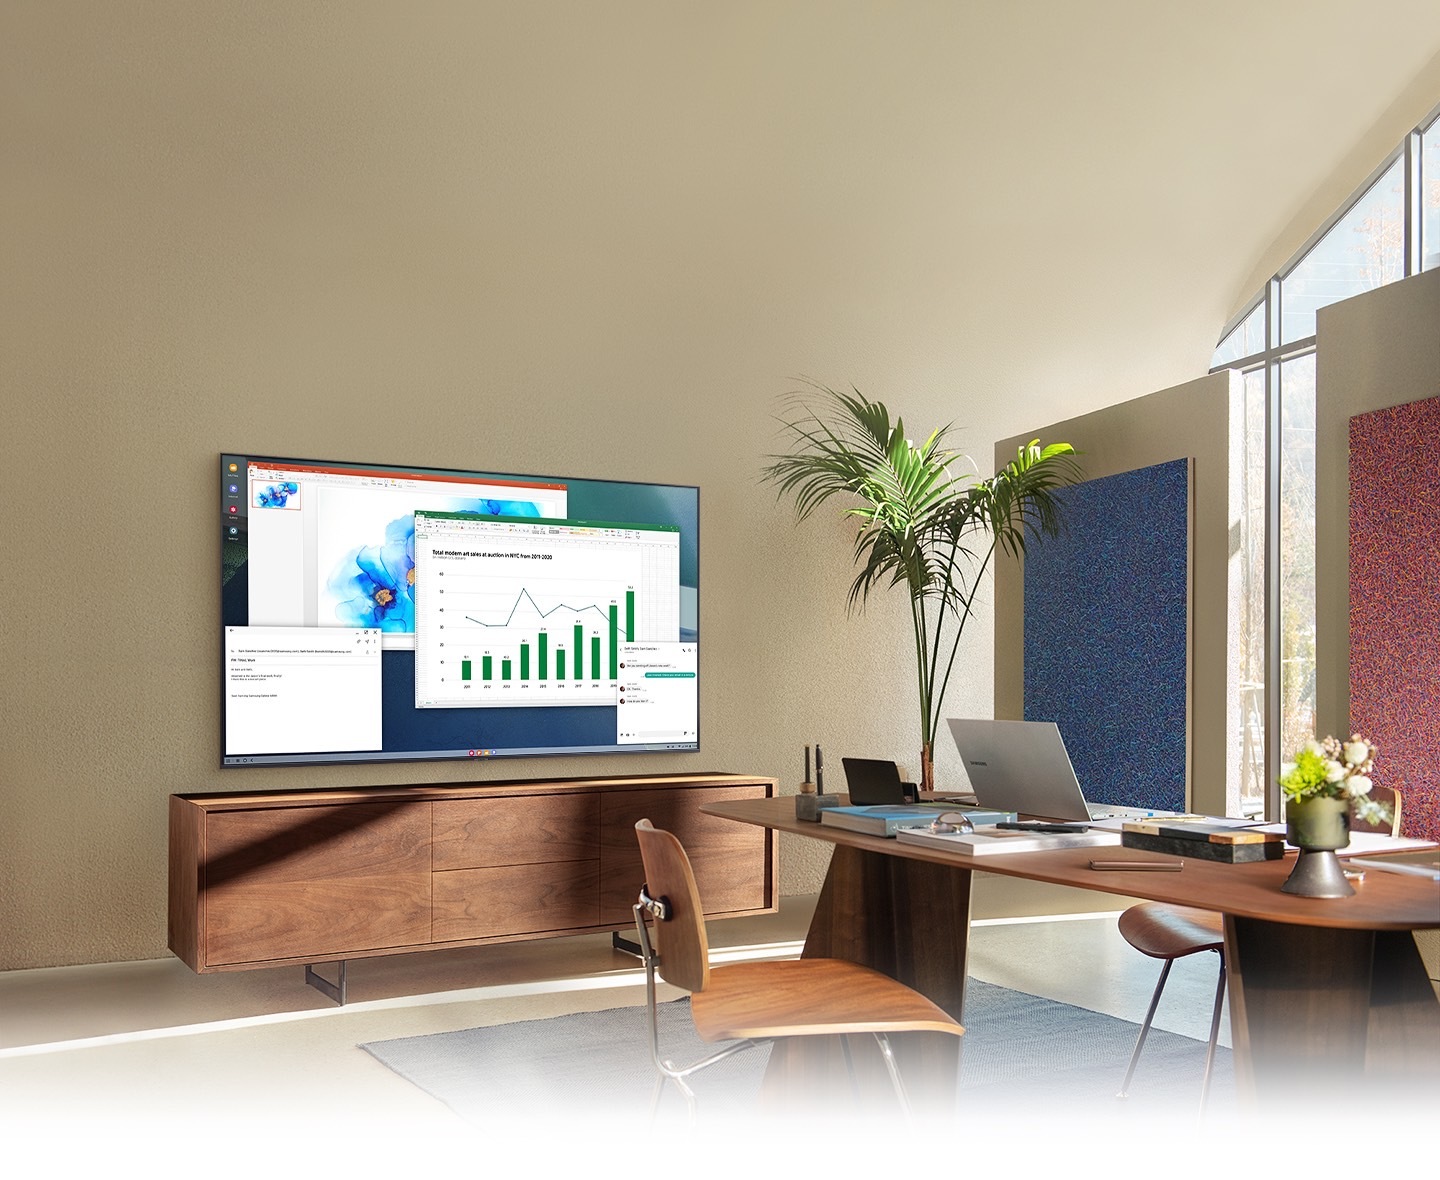 Sala de una casa convertida en una oficina. Una pantalla de un TV Samsung muestra la función PC on TV que permite que la TV casa se conecte a la PC de la oficina